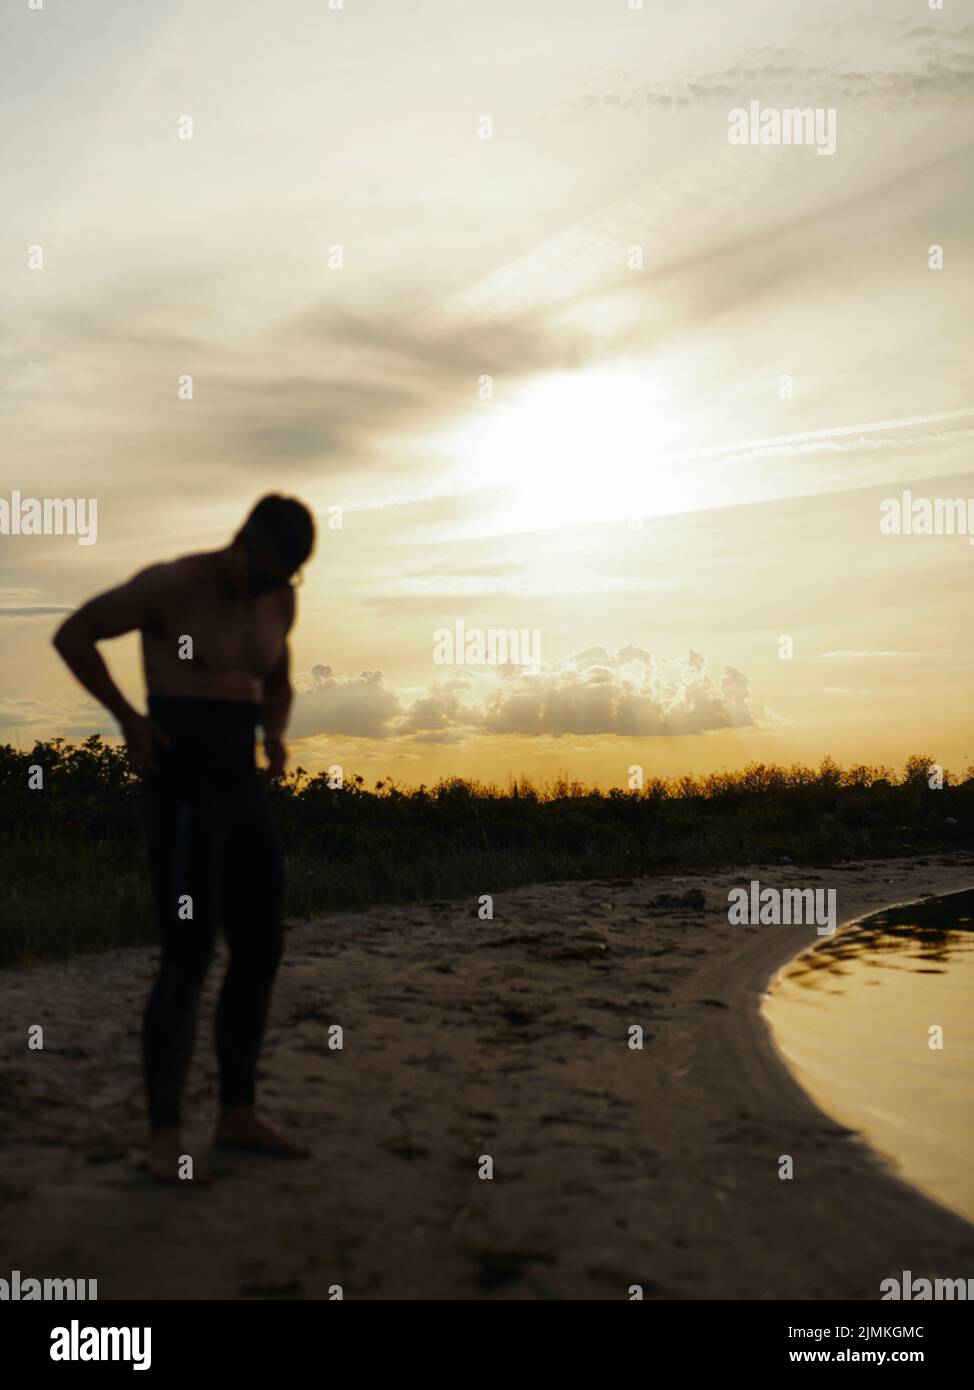 Taucherin, der einen Neoprenanzug aufsetzt, während er bei Sonnenuntergang am Strand steht. Abenteuerlicher junger Mann, der sich darauf vorbereitet, am Meer ins Wasser zu kommen. Stockfoto